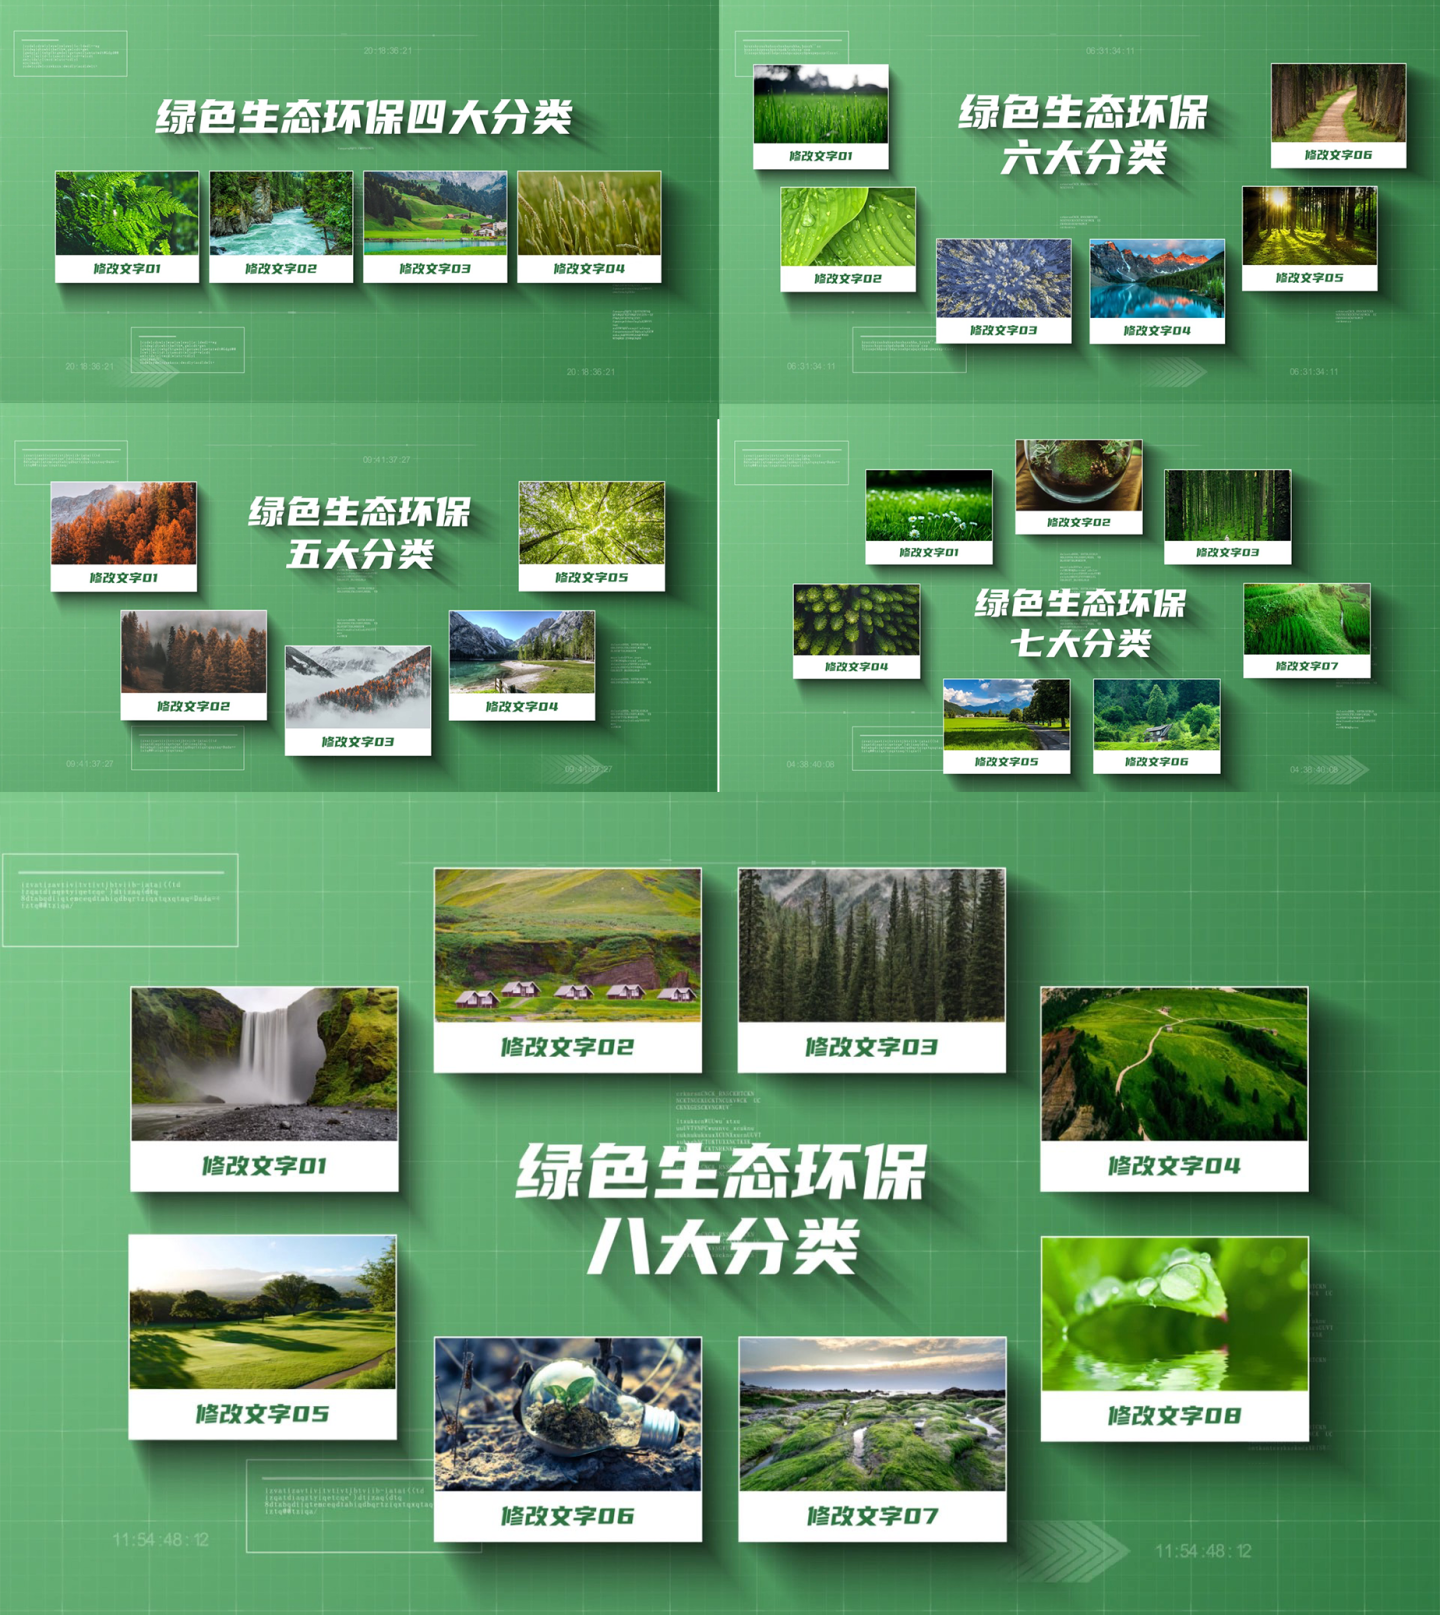 绿色农业生态环保分类多照片图文展示